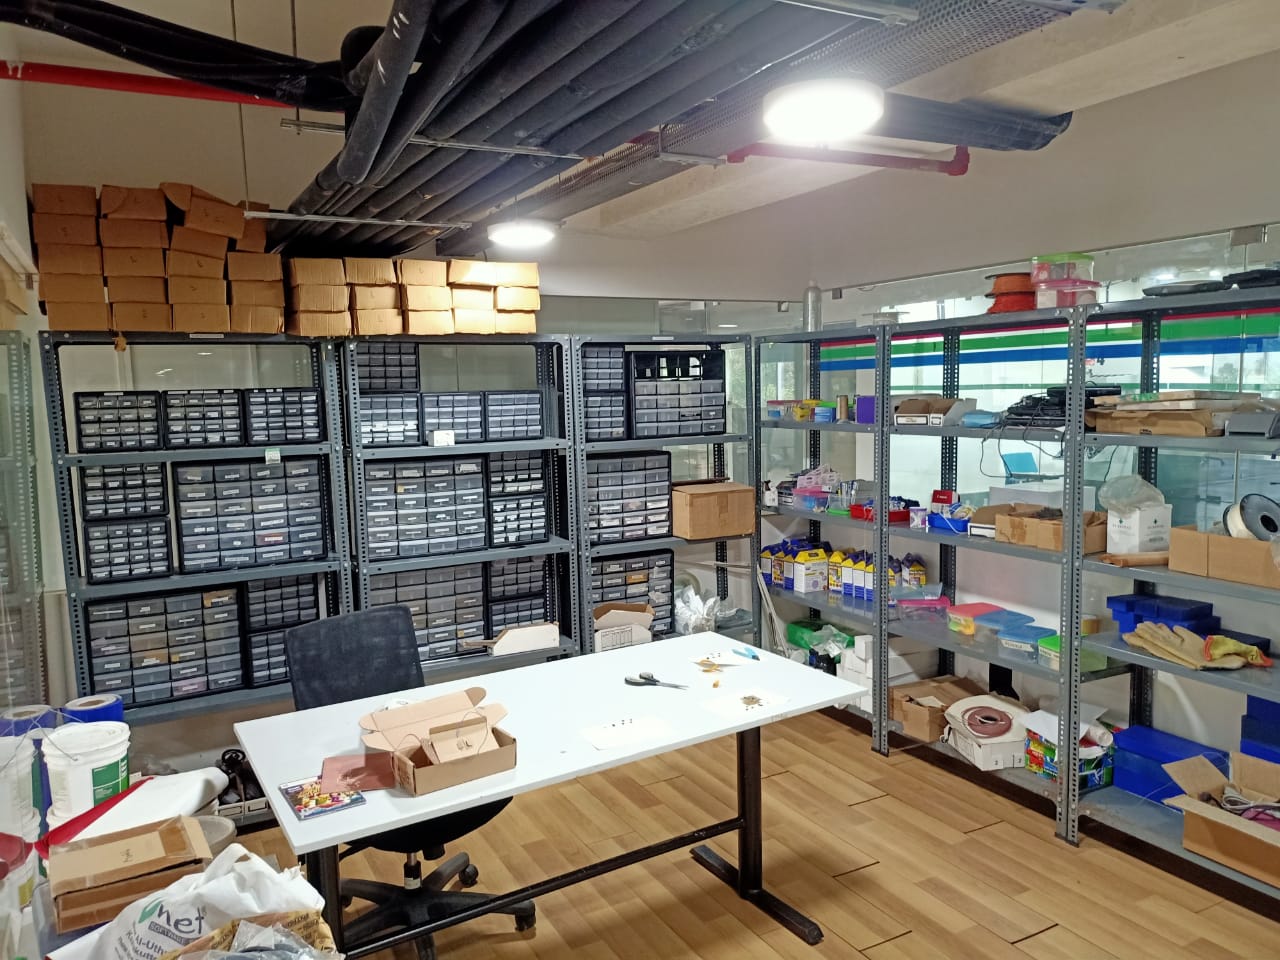                                                                       Inventory of Fab lab Kochi